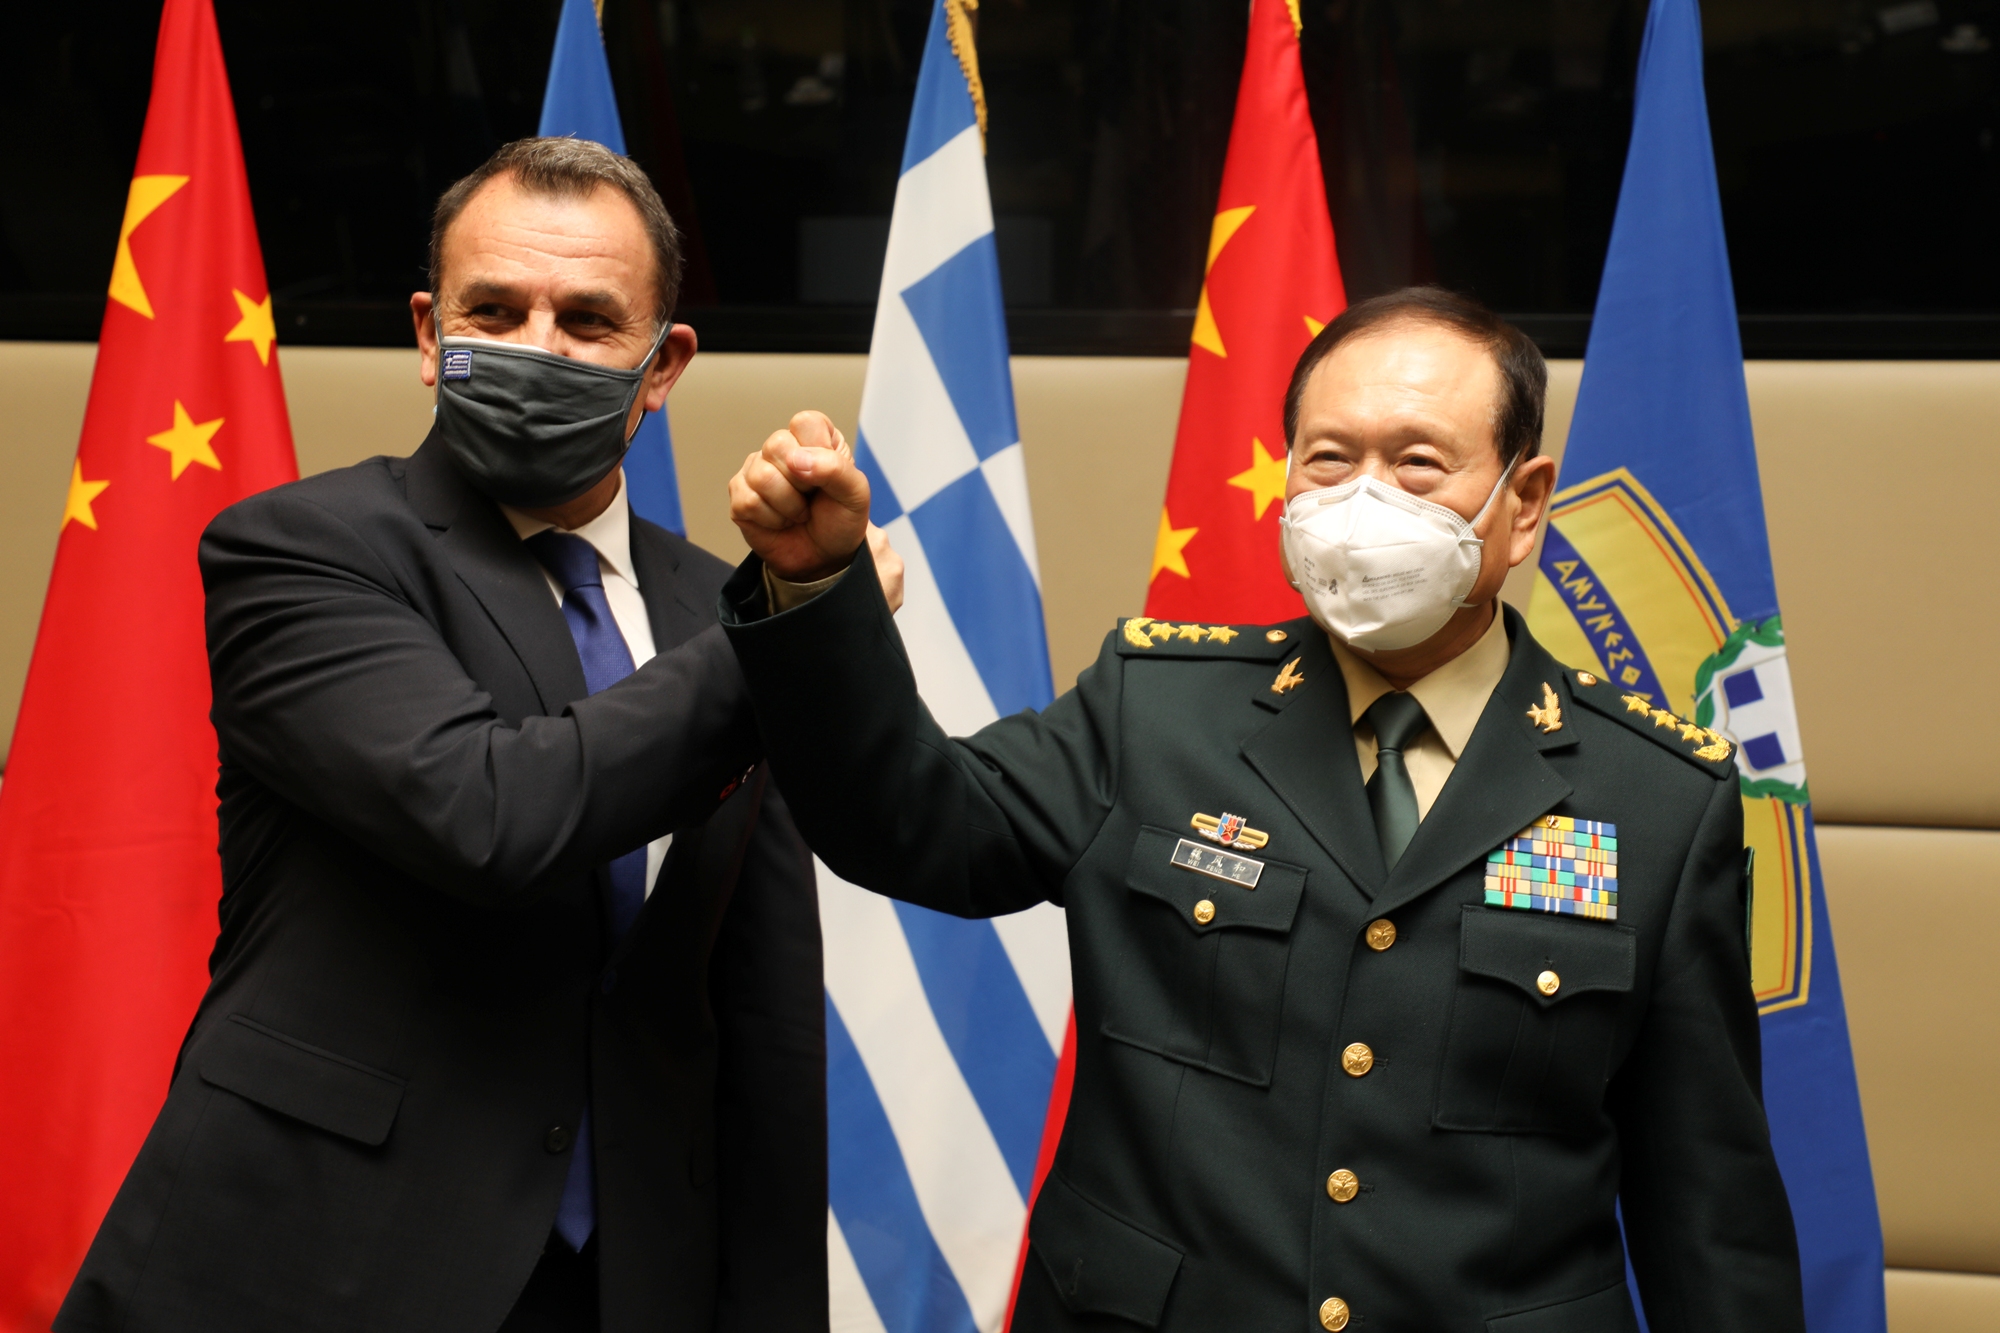 Παναγιωτόπουλος: “Μήνυμα” για την ανατολική Μεσόγειο στη συνάντηση με τον Υπουργό Άμυνας της Κίνας [pics]